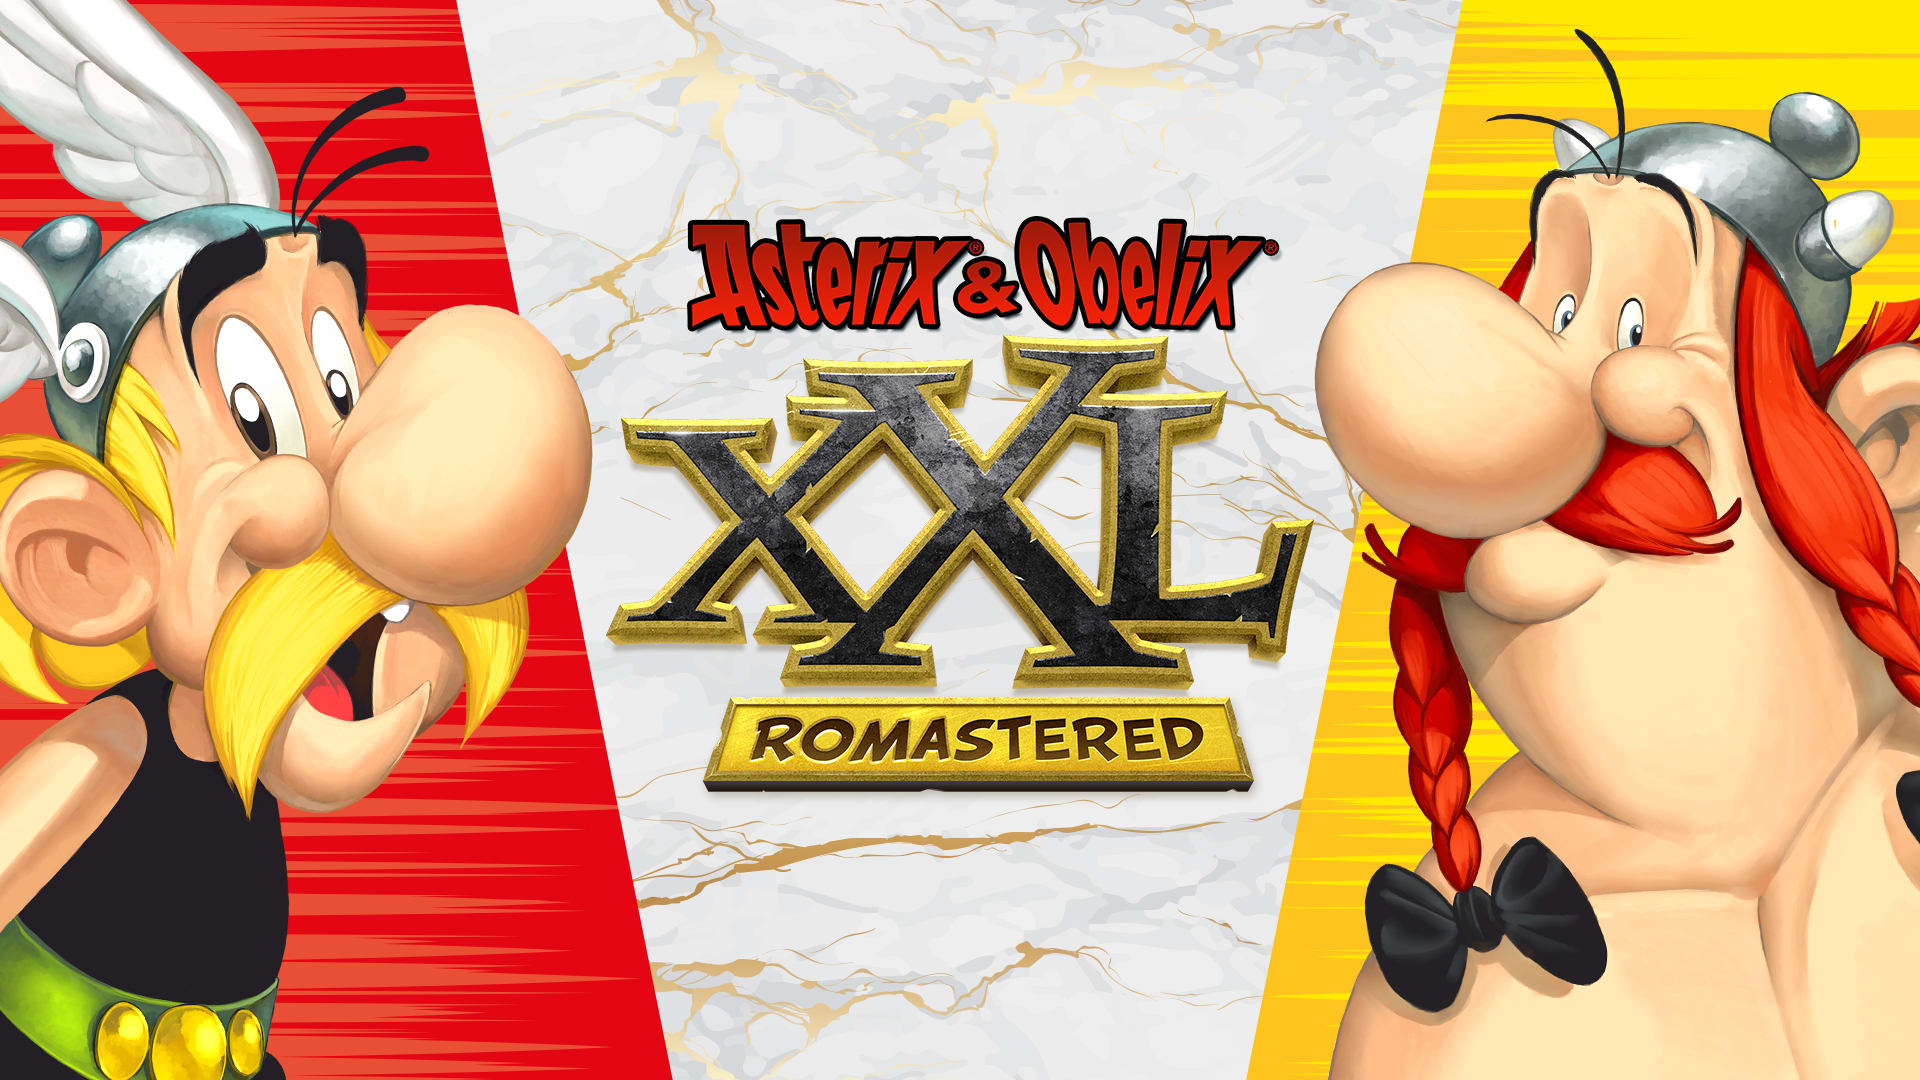 Astérix & Obélix XXL: Romastered 1